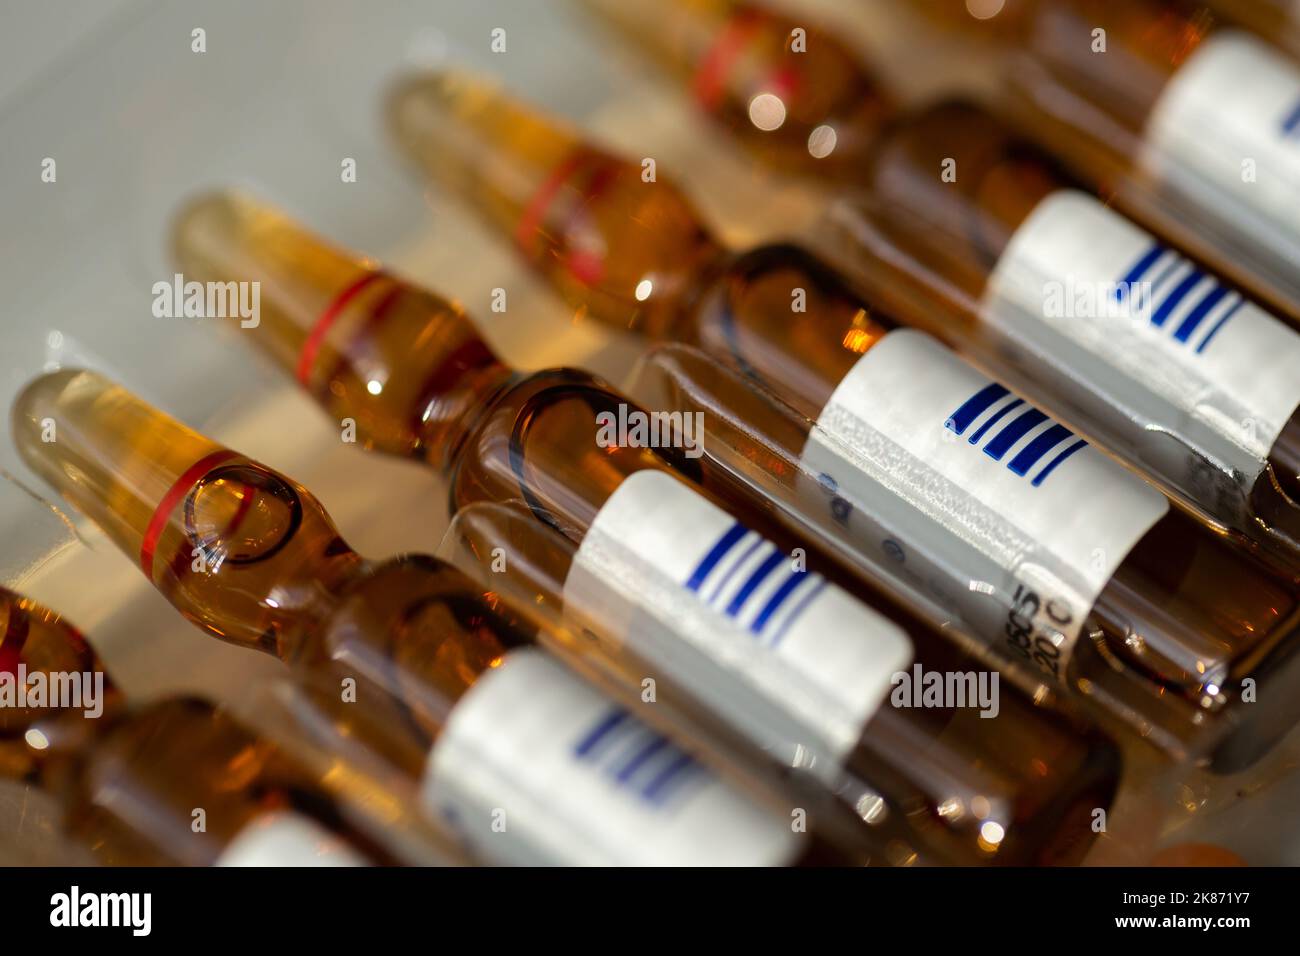 Liquid medicine vials. Stock Photo